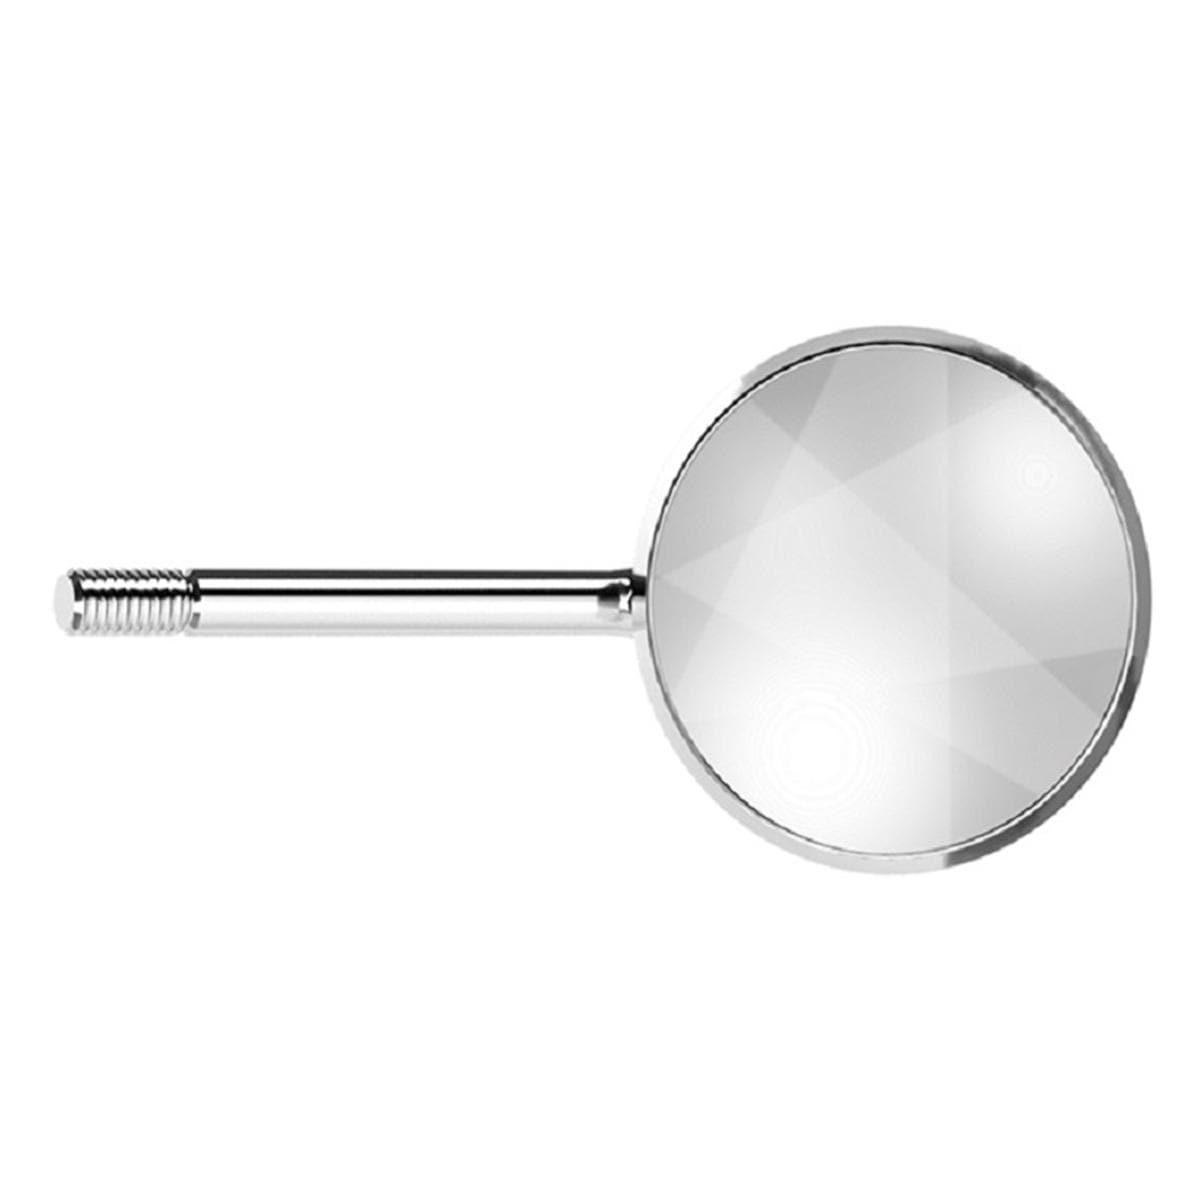 Acteon Mondspiegels rhodium - REF. MP3326PH, Size 6 (26 mm), 12 stuks